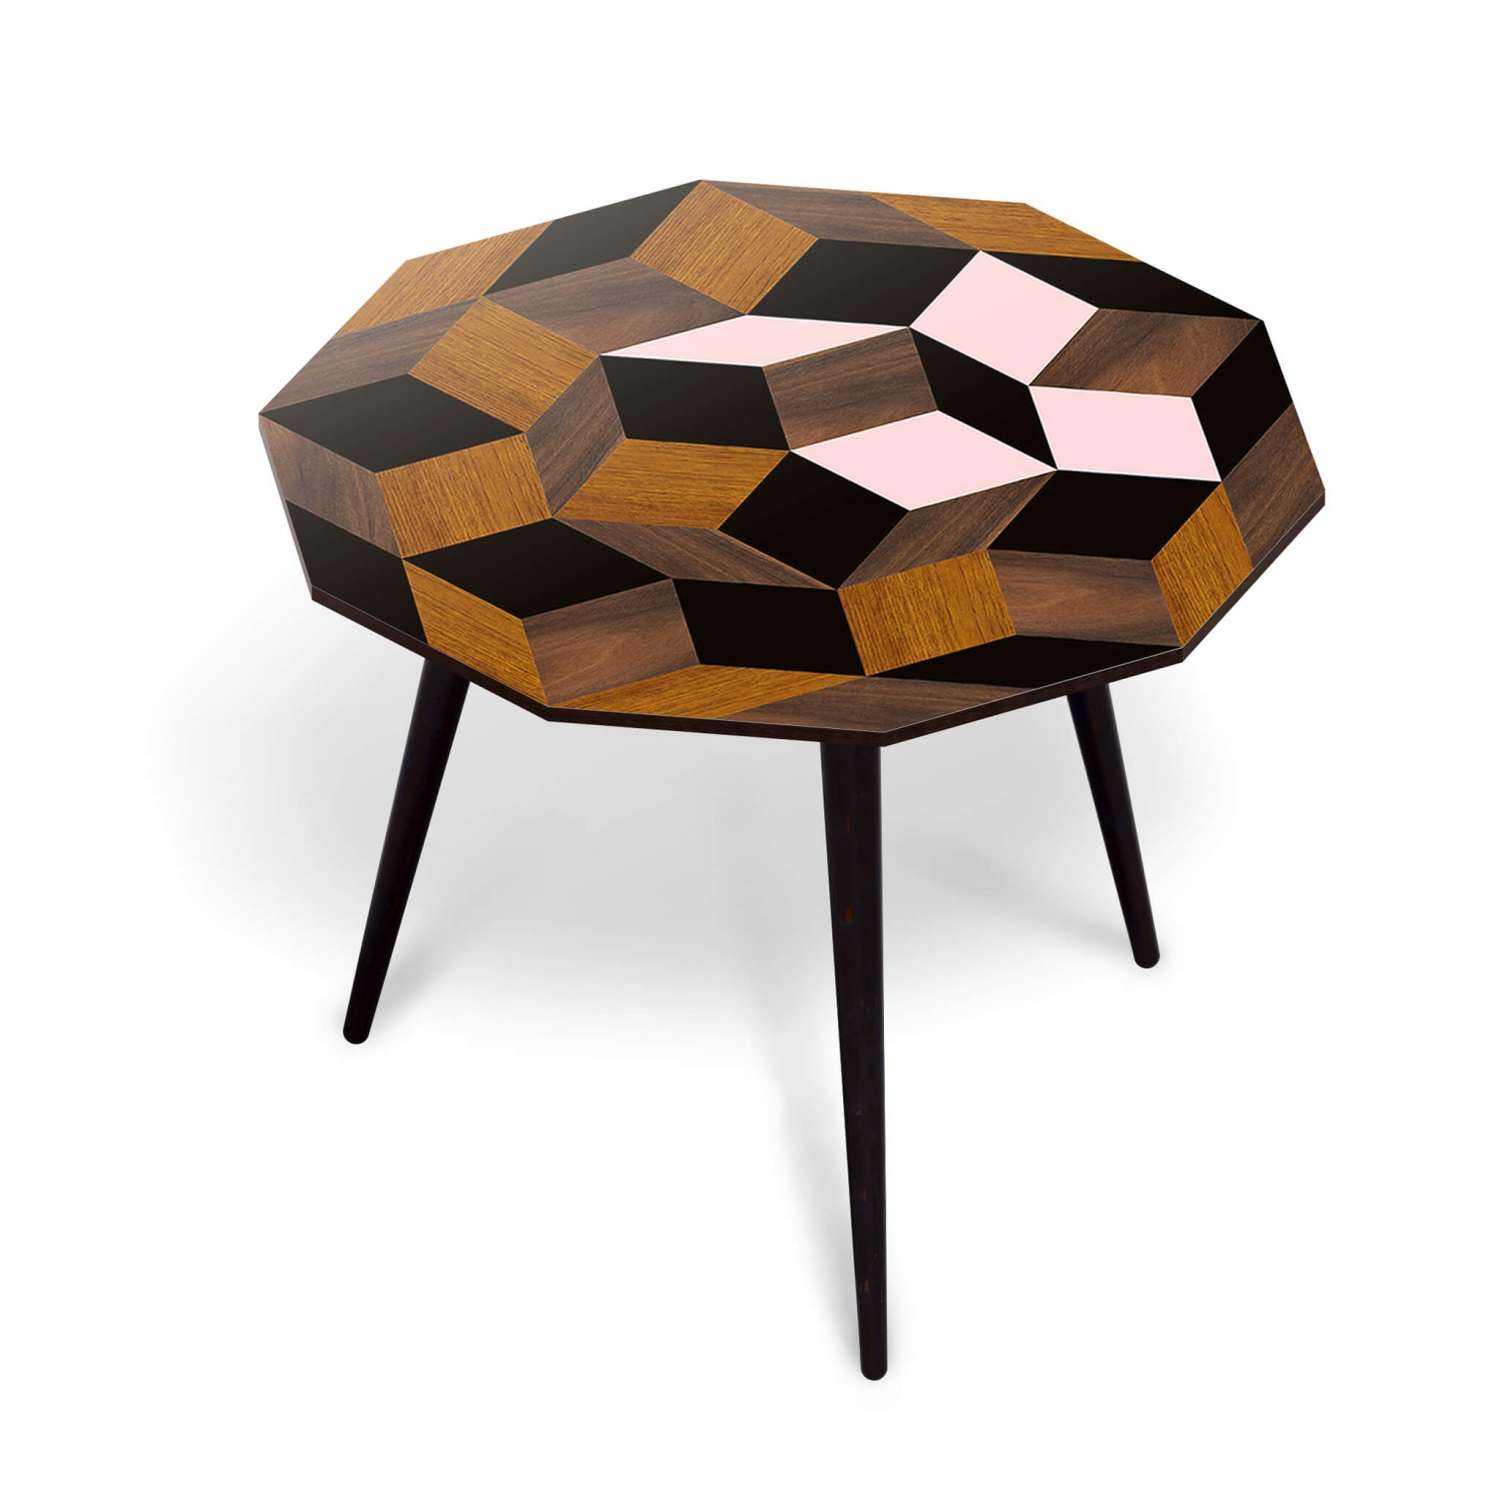 Table basse spring wood Penrose, motif géométrique crée par Roger Penrose. Marqueterie de bois et rose, design ichetkar